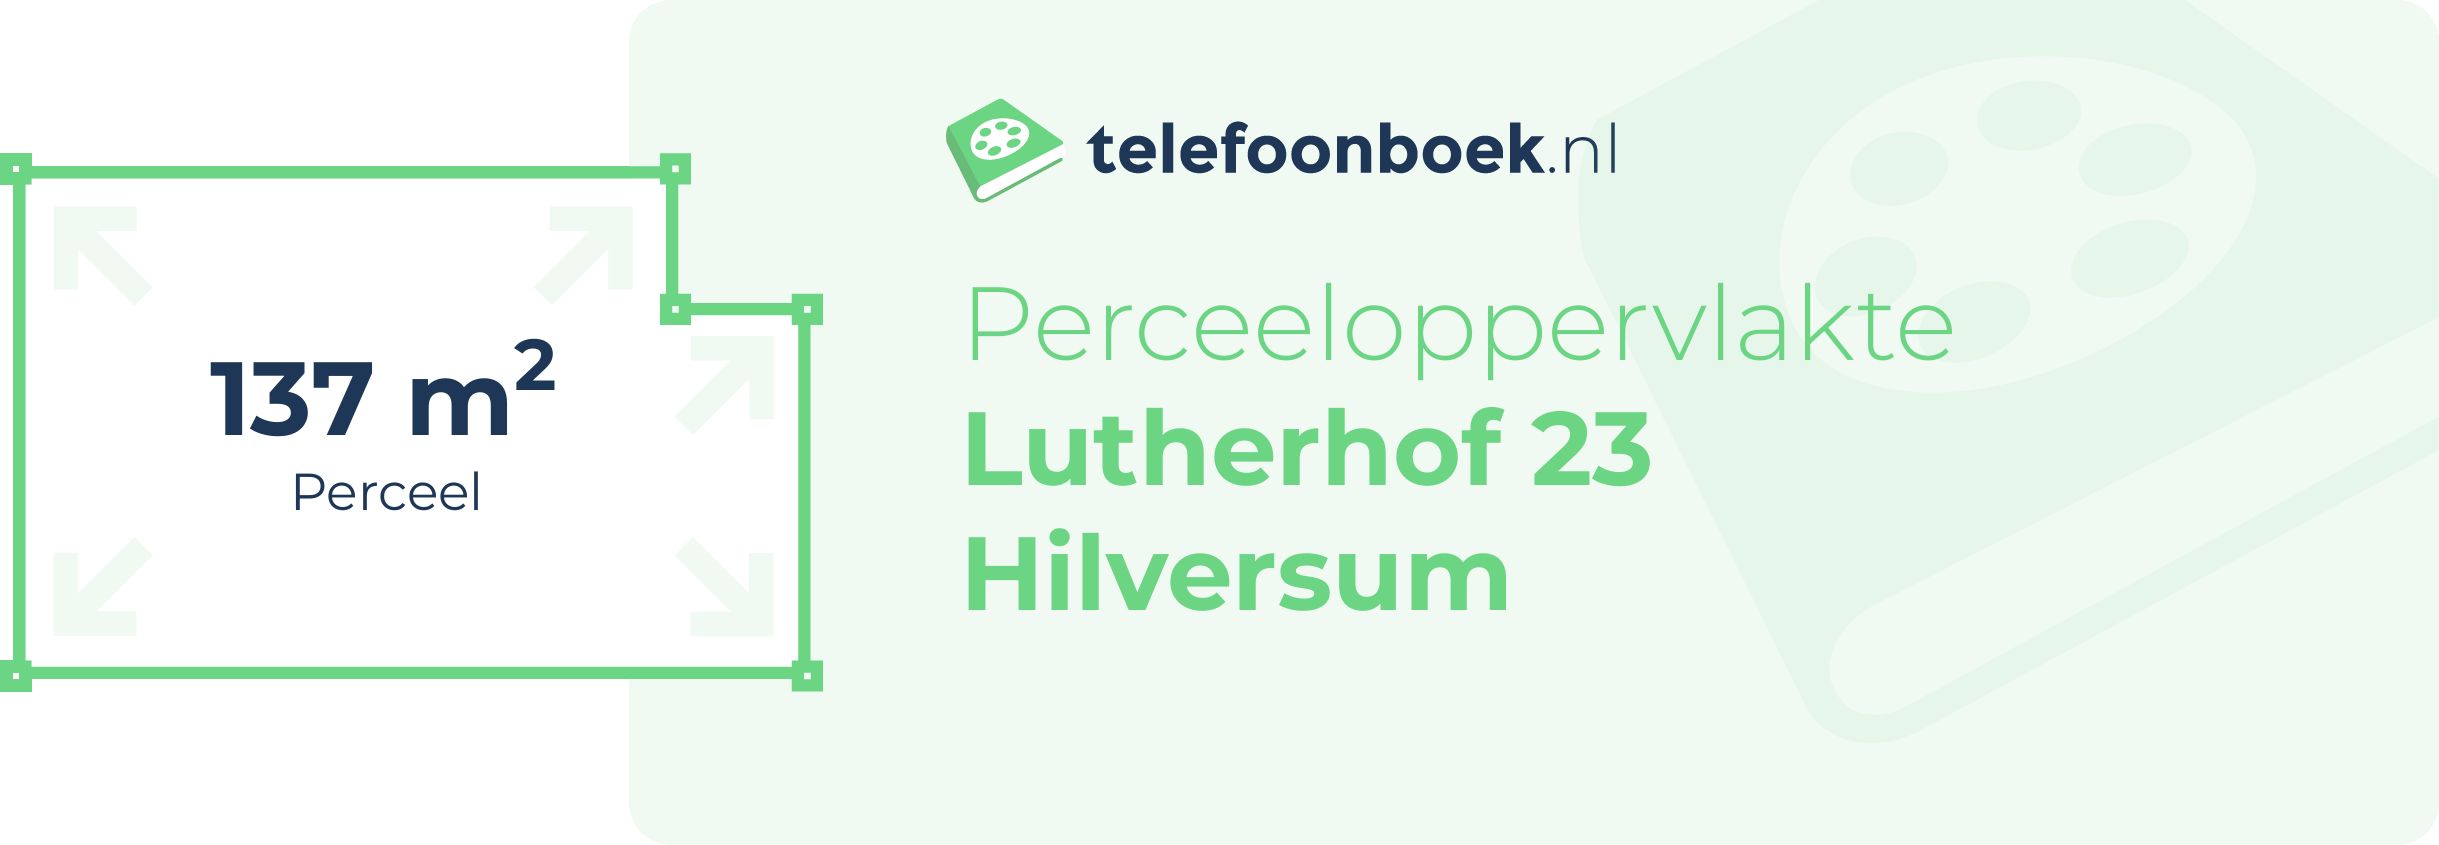 Perceeloppervlakte Lutherhof 23 Hilversum